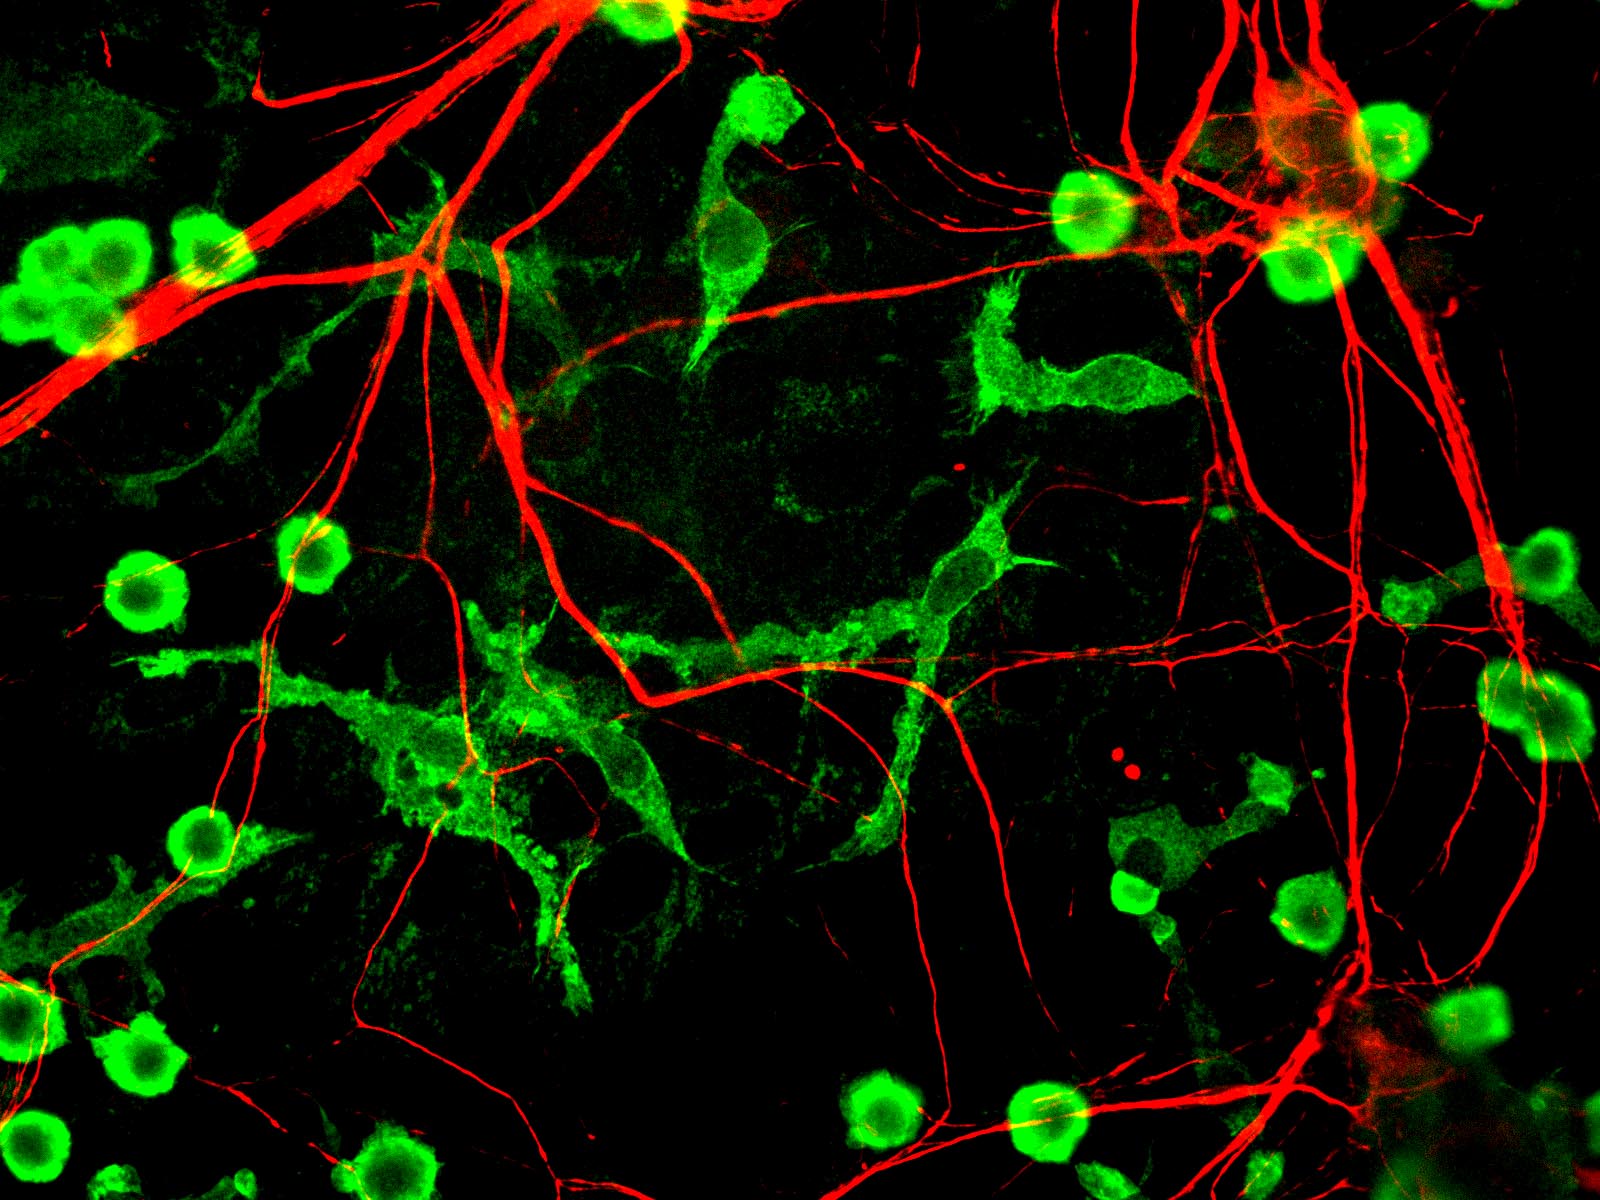 Le nombre de neurones chez une personne est estimé entre 86 et 100 milliards, et il diminue au cours des années. © Journal of Cell Biology, Flickr, cc by nc sa 2.0